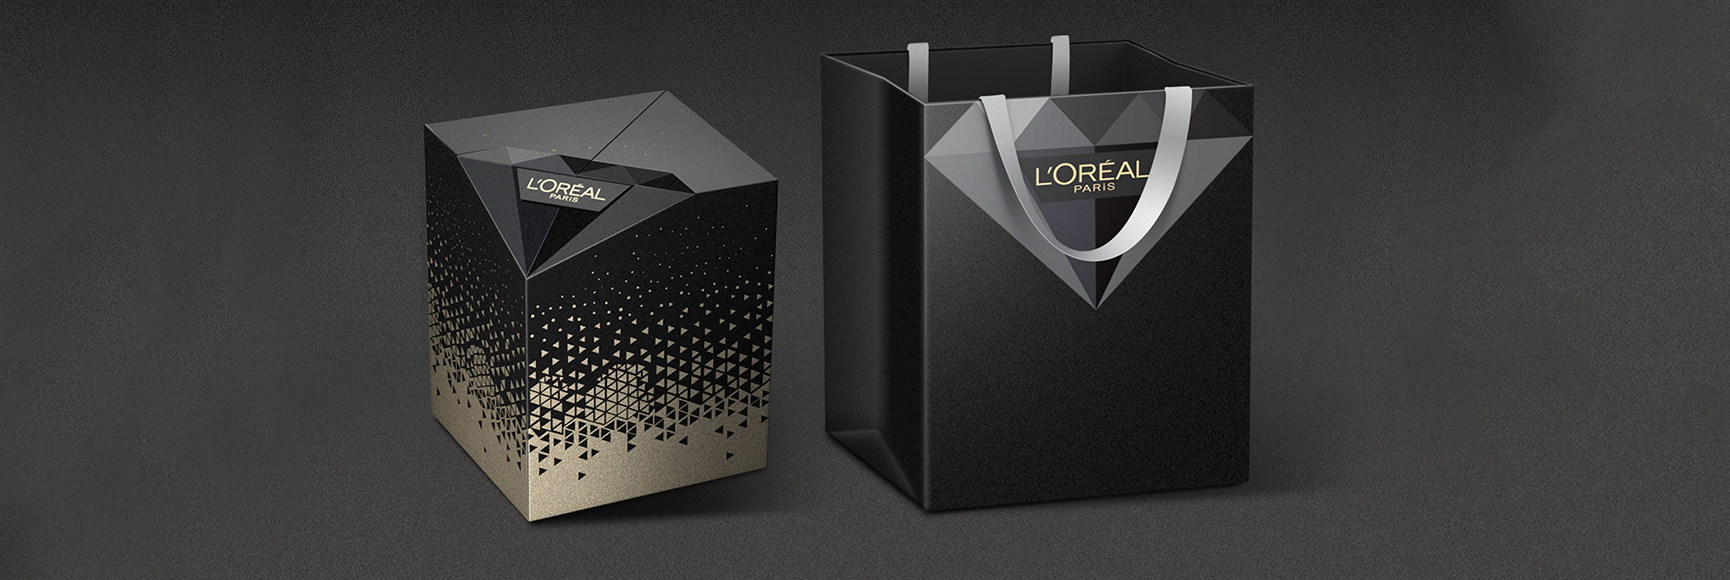 لوريال ايج بيرفكت ديلوكس للعناية بالبشرة PR Giftet Packaging Design صورة مميزة